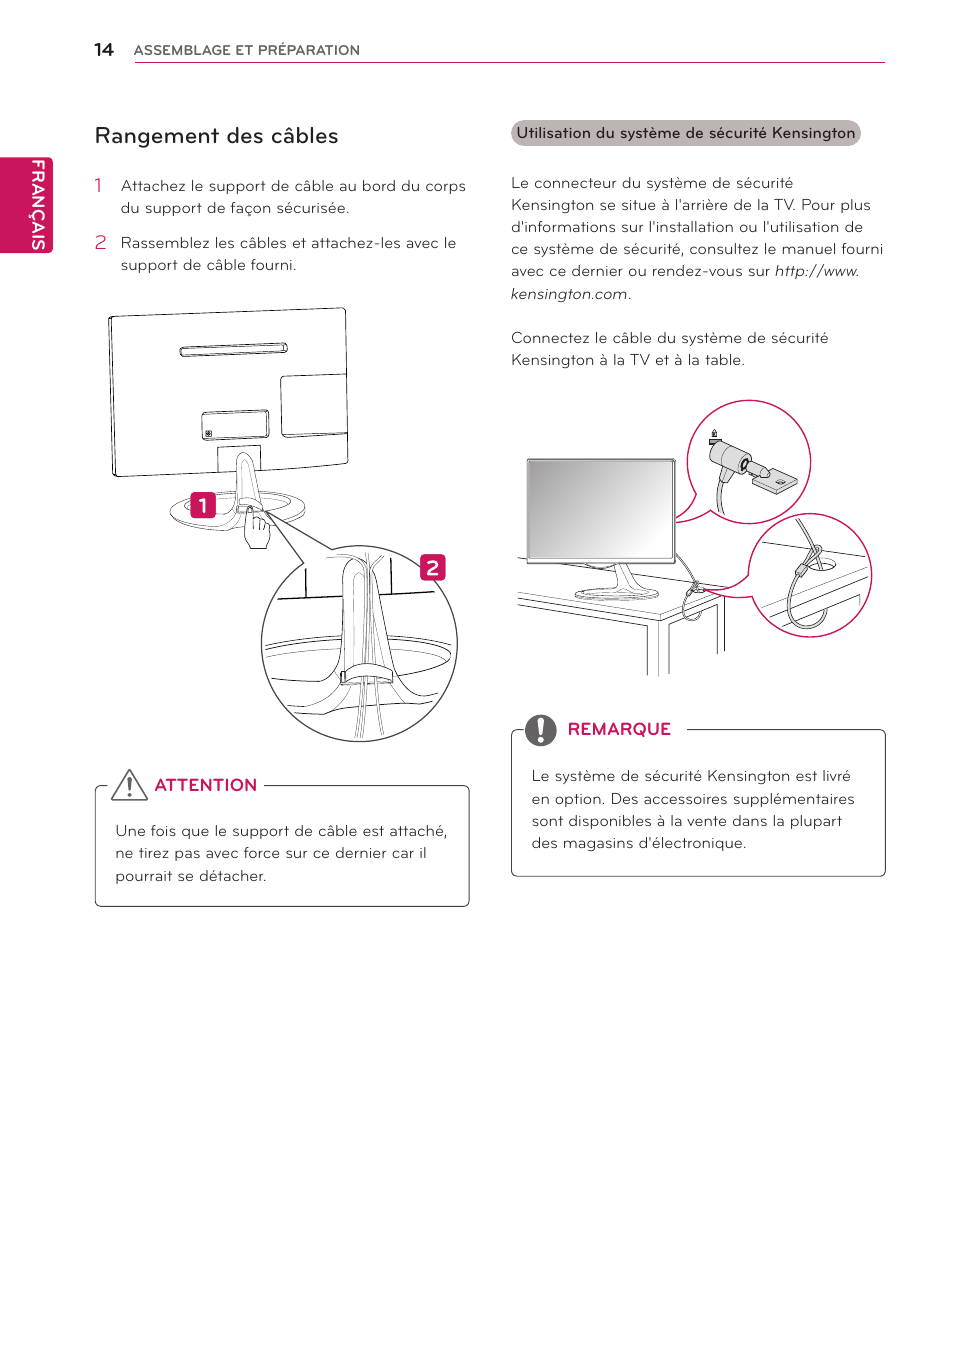 Rangement des câbles, Voir p. 14) | LG 23MA73D-PZ Manuel d'utilisation | Page 14 / 44